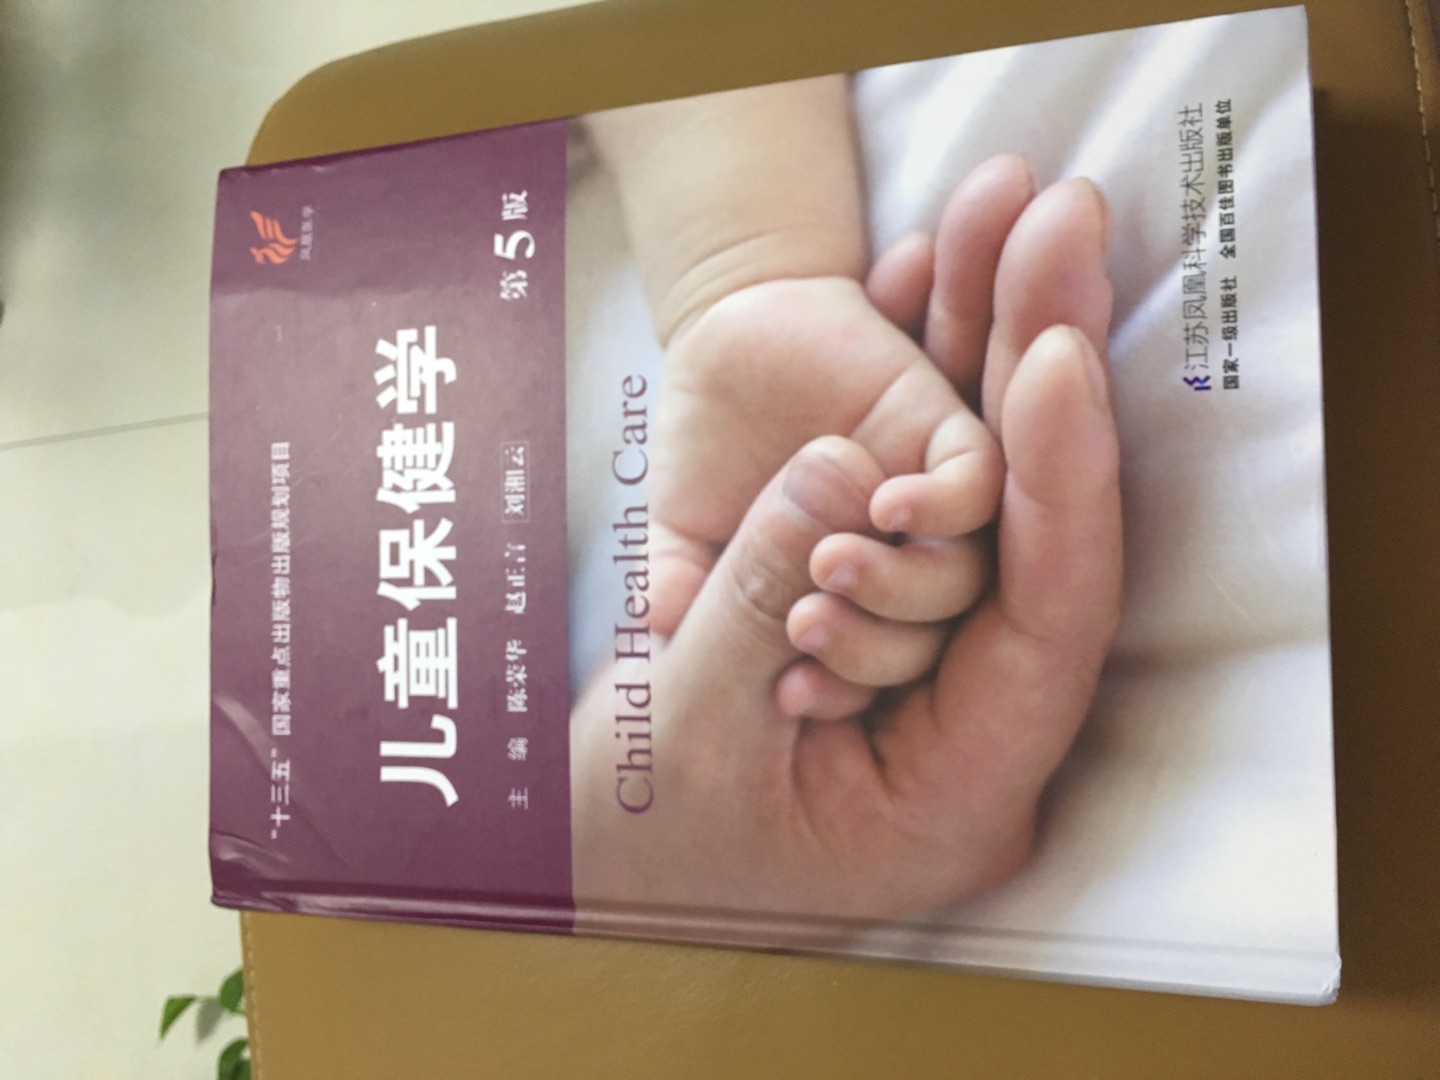 好大一本书，家人推荐的，给宝宝准备的，希望能对宝宝的健康成长有指导意义～